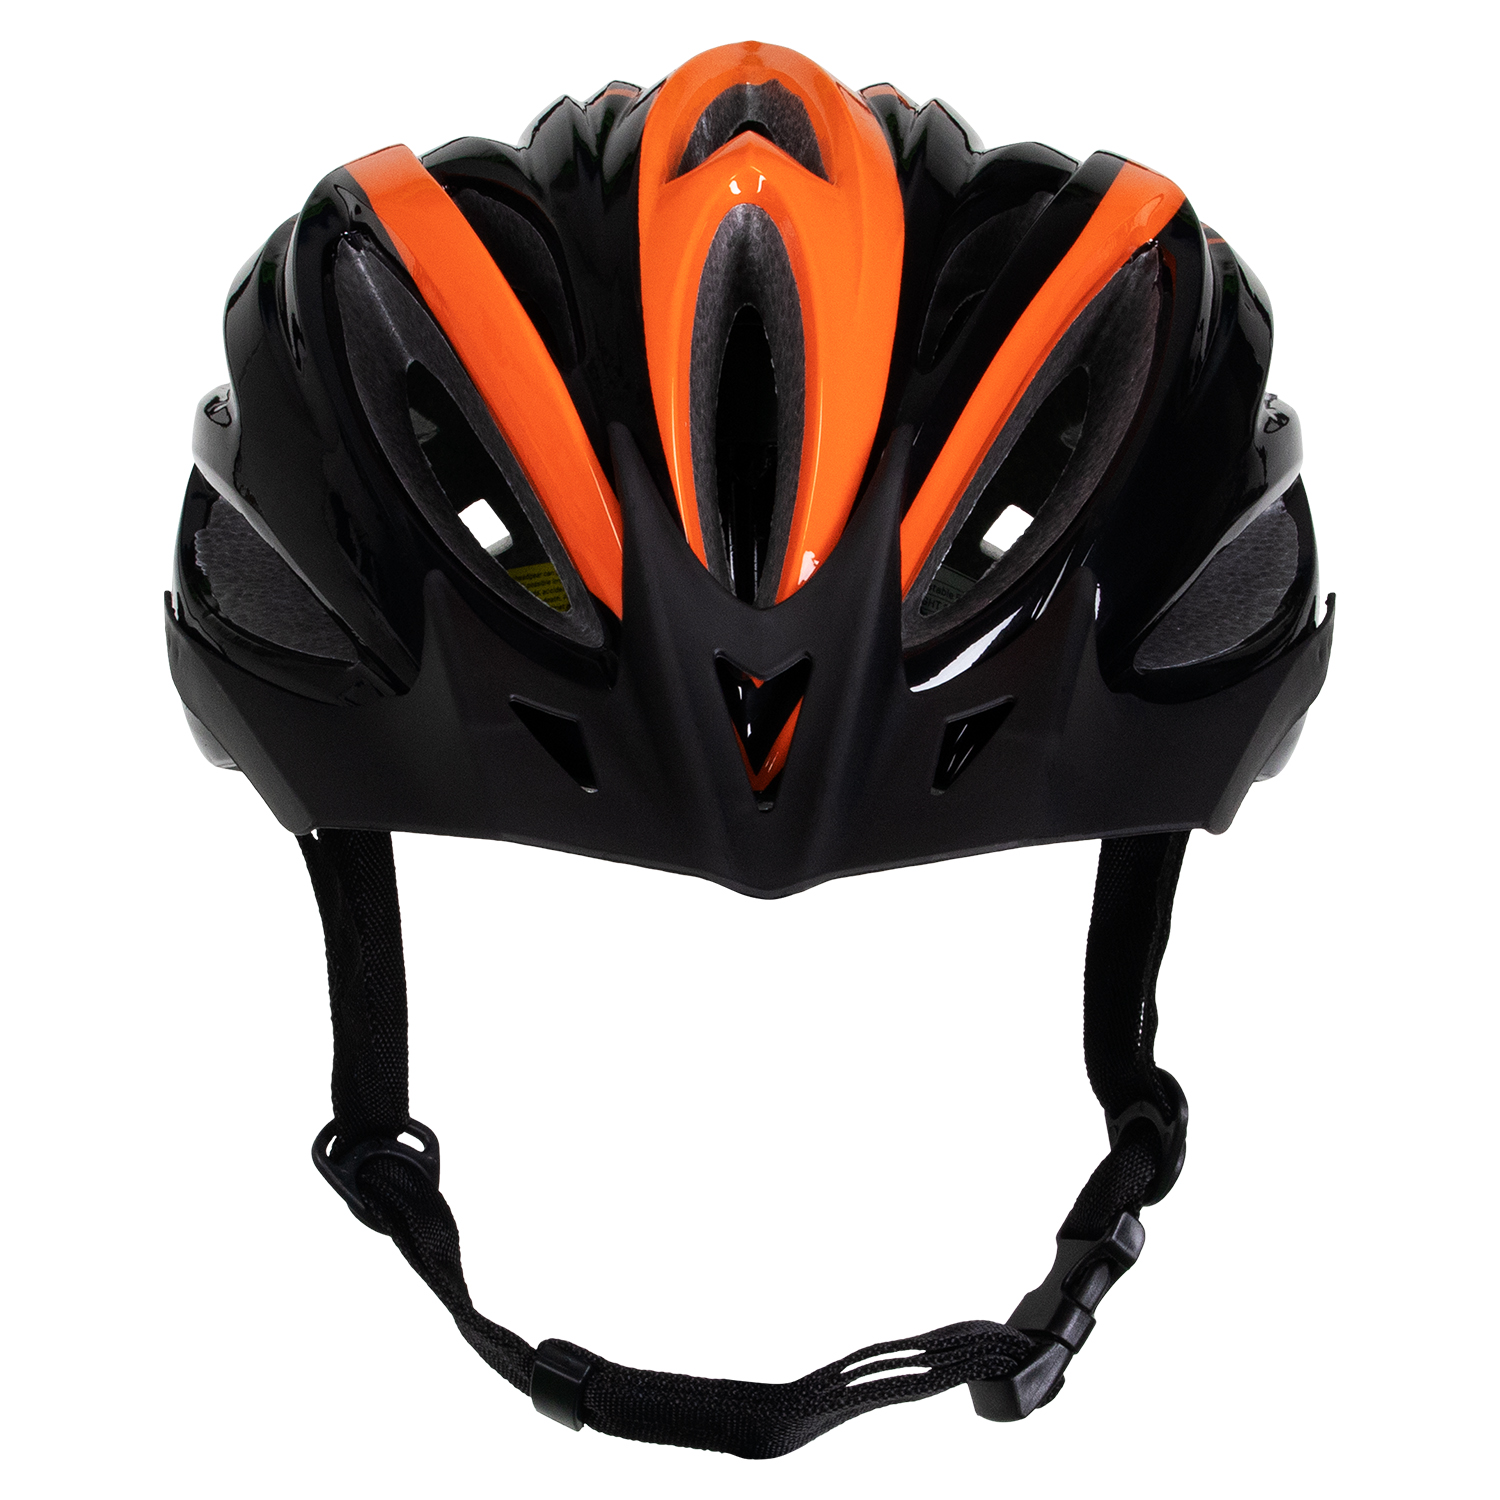 Nón bảo hiểm xe đạp ROC R19 - Gọn nhẹ - Thoáng khí - Thời trang - Nhiều màu sắc để lựa chọn - Hàng chính hãng - Bảo hành 12 tháng